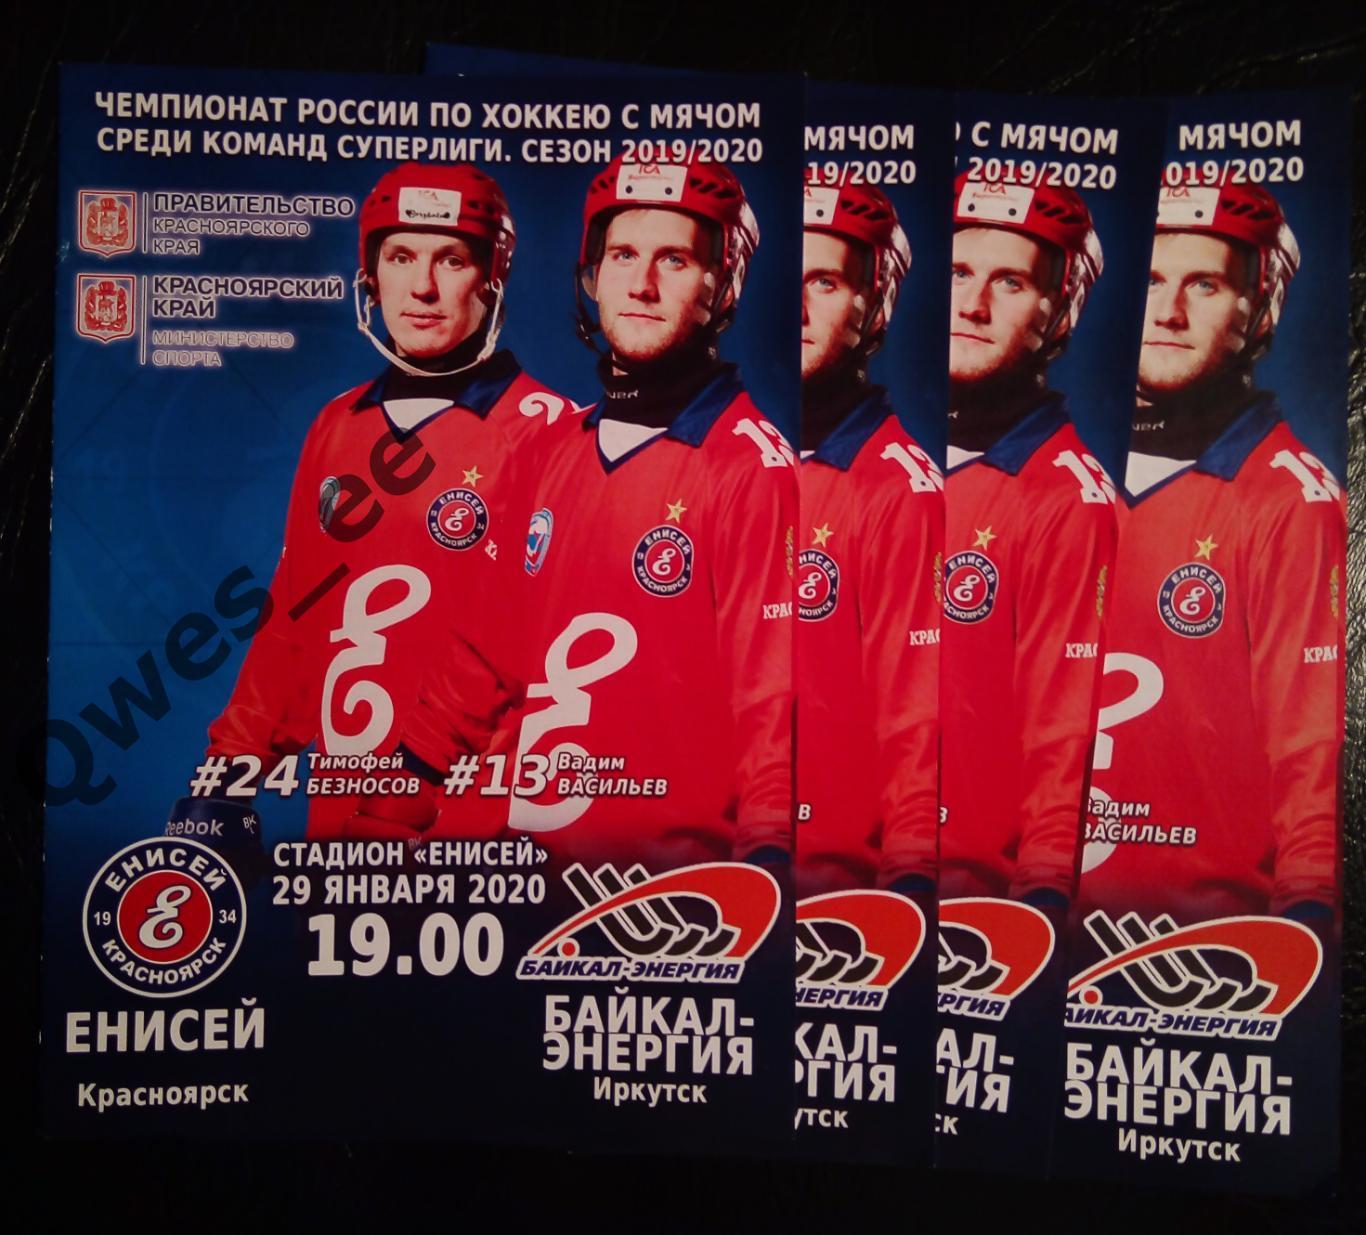 Хоккей с мячом Енисей Красноярск - Байкал-Энергия Иркутск 29 января 2020